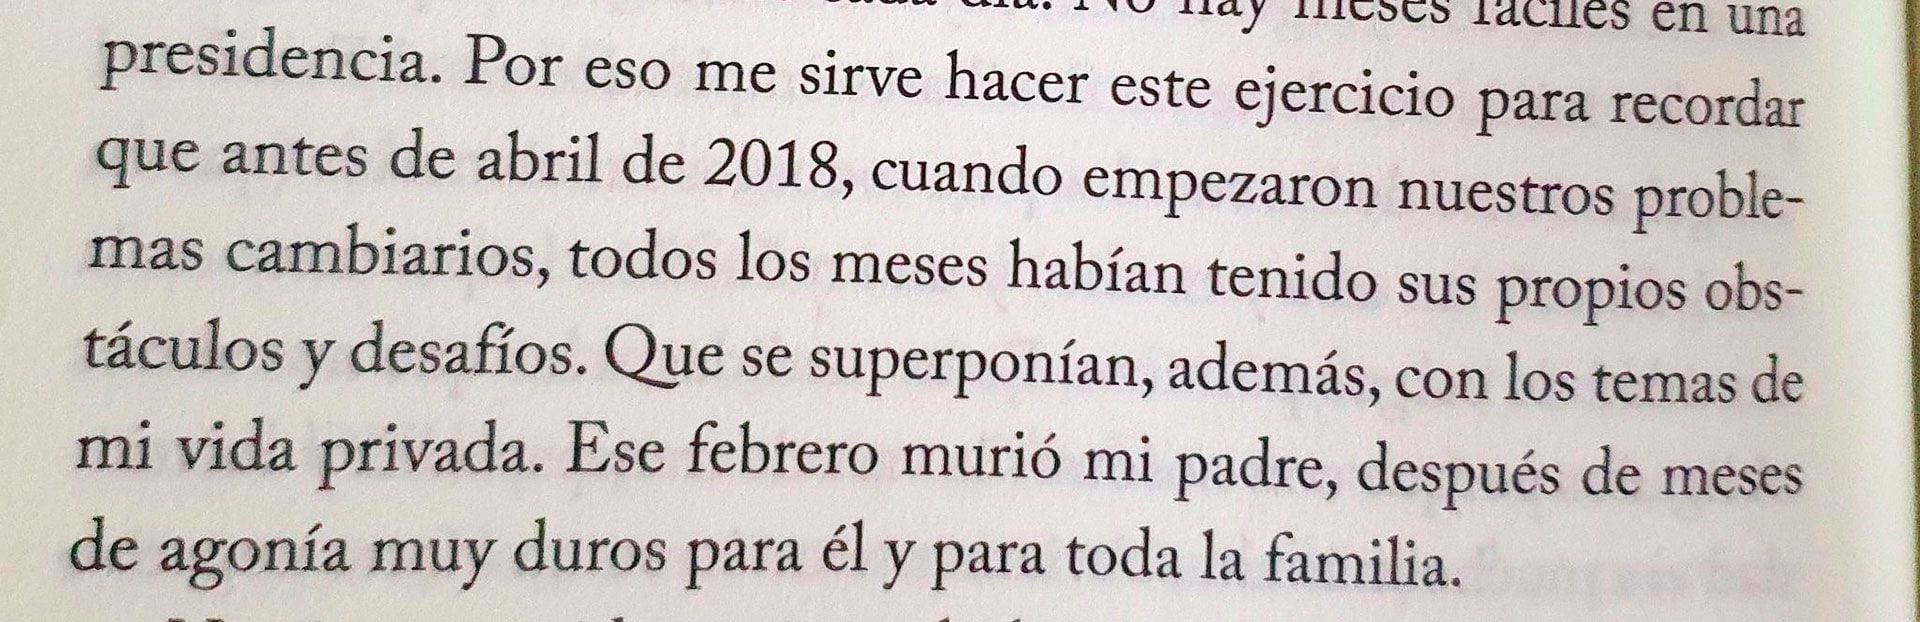 El sugestivo yerro de Mauricio Macri sobre la muerte de su padre, en "Primer Tiempo".